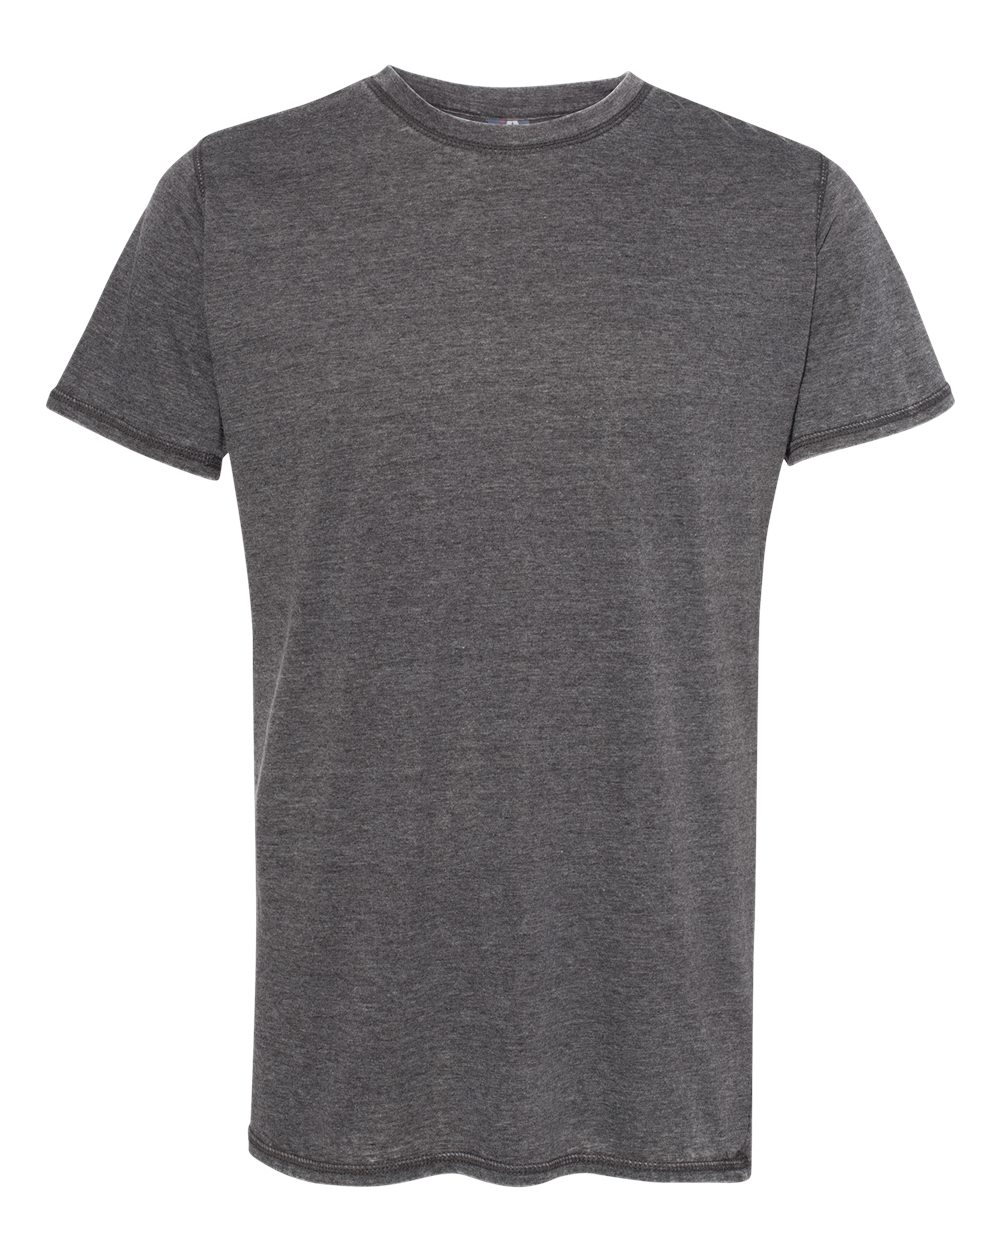 J. America - 8115 - Zen Jersey Short Sleeve T-Shirt $10.71 - T-Shirts